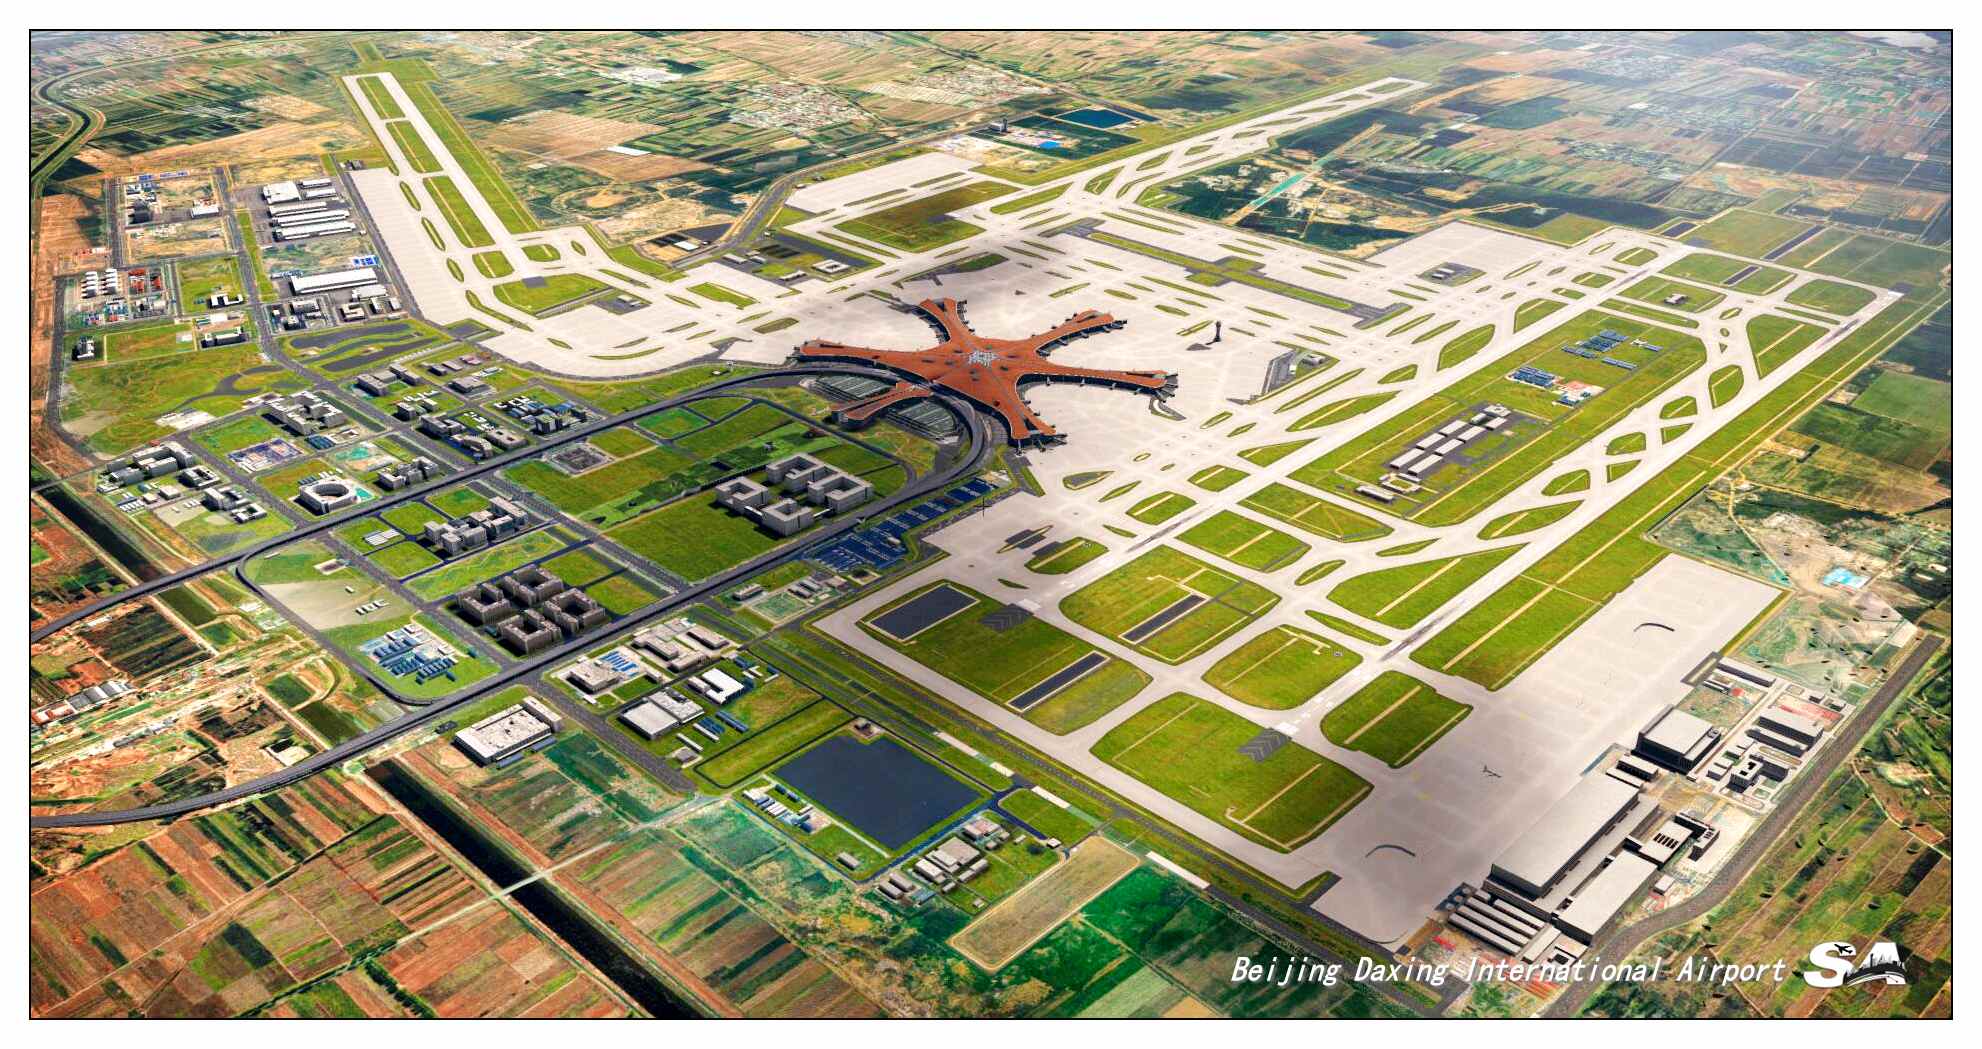 【X-Plane】ZBAD北京大兴国际机场-正式发布-896 